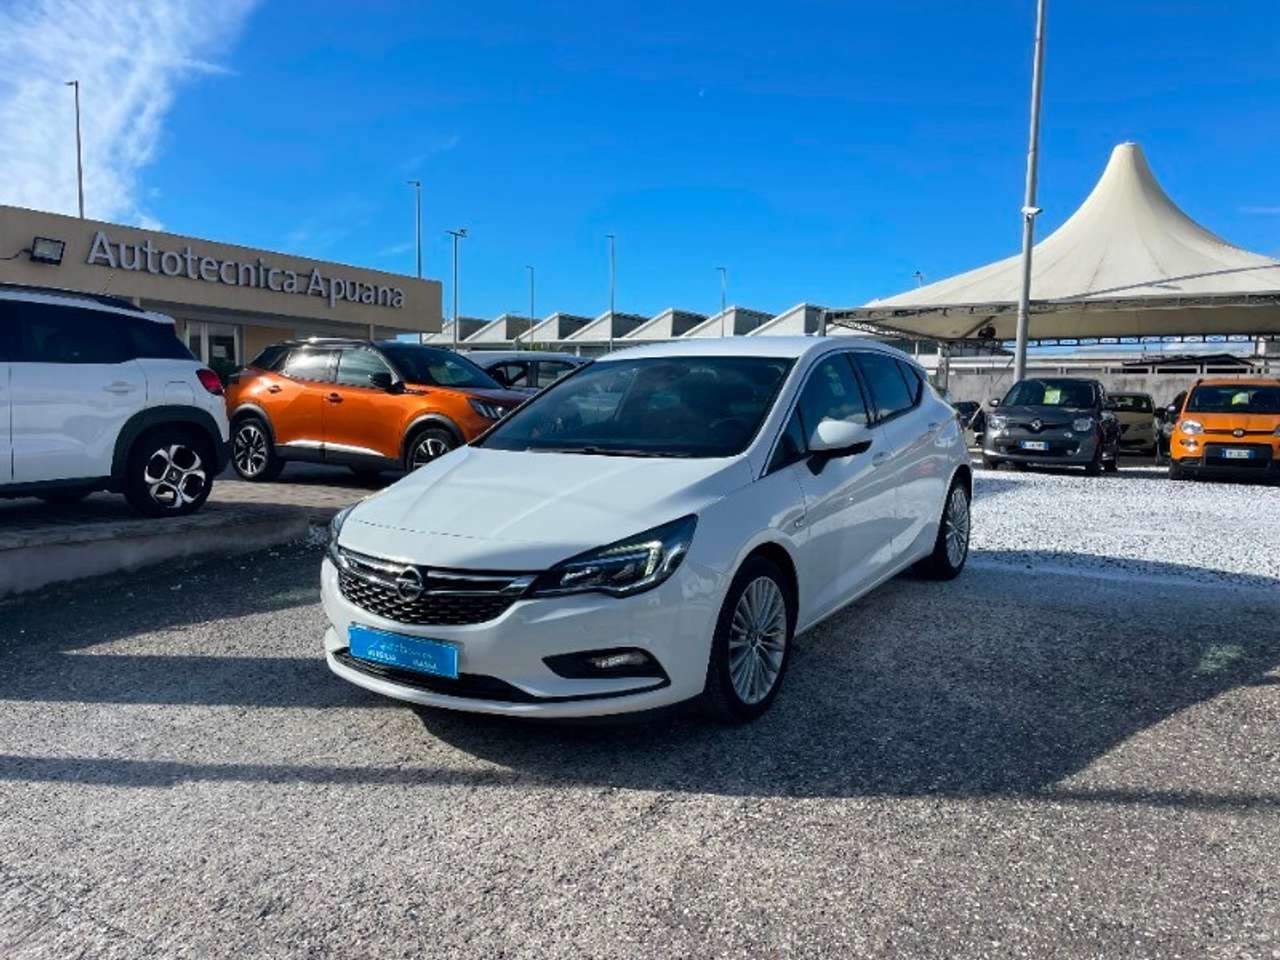 Opel Astra 1.6 CDTi 110 CV S&S 5p. Innovation